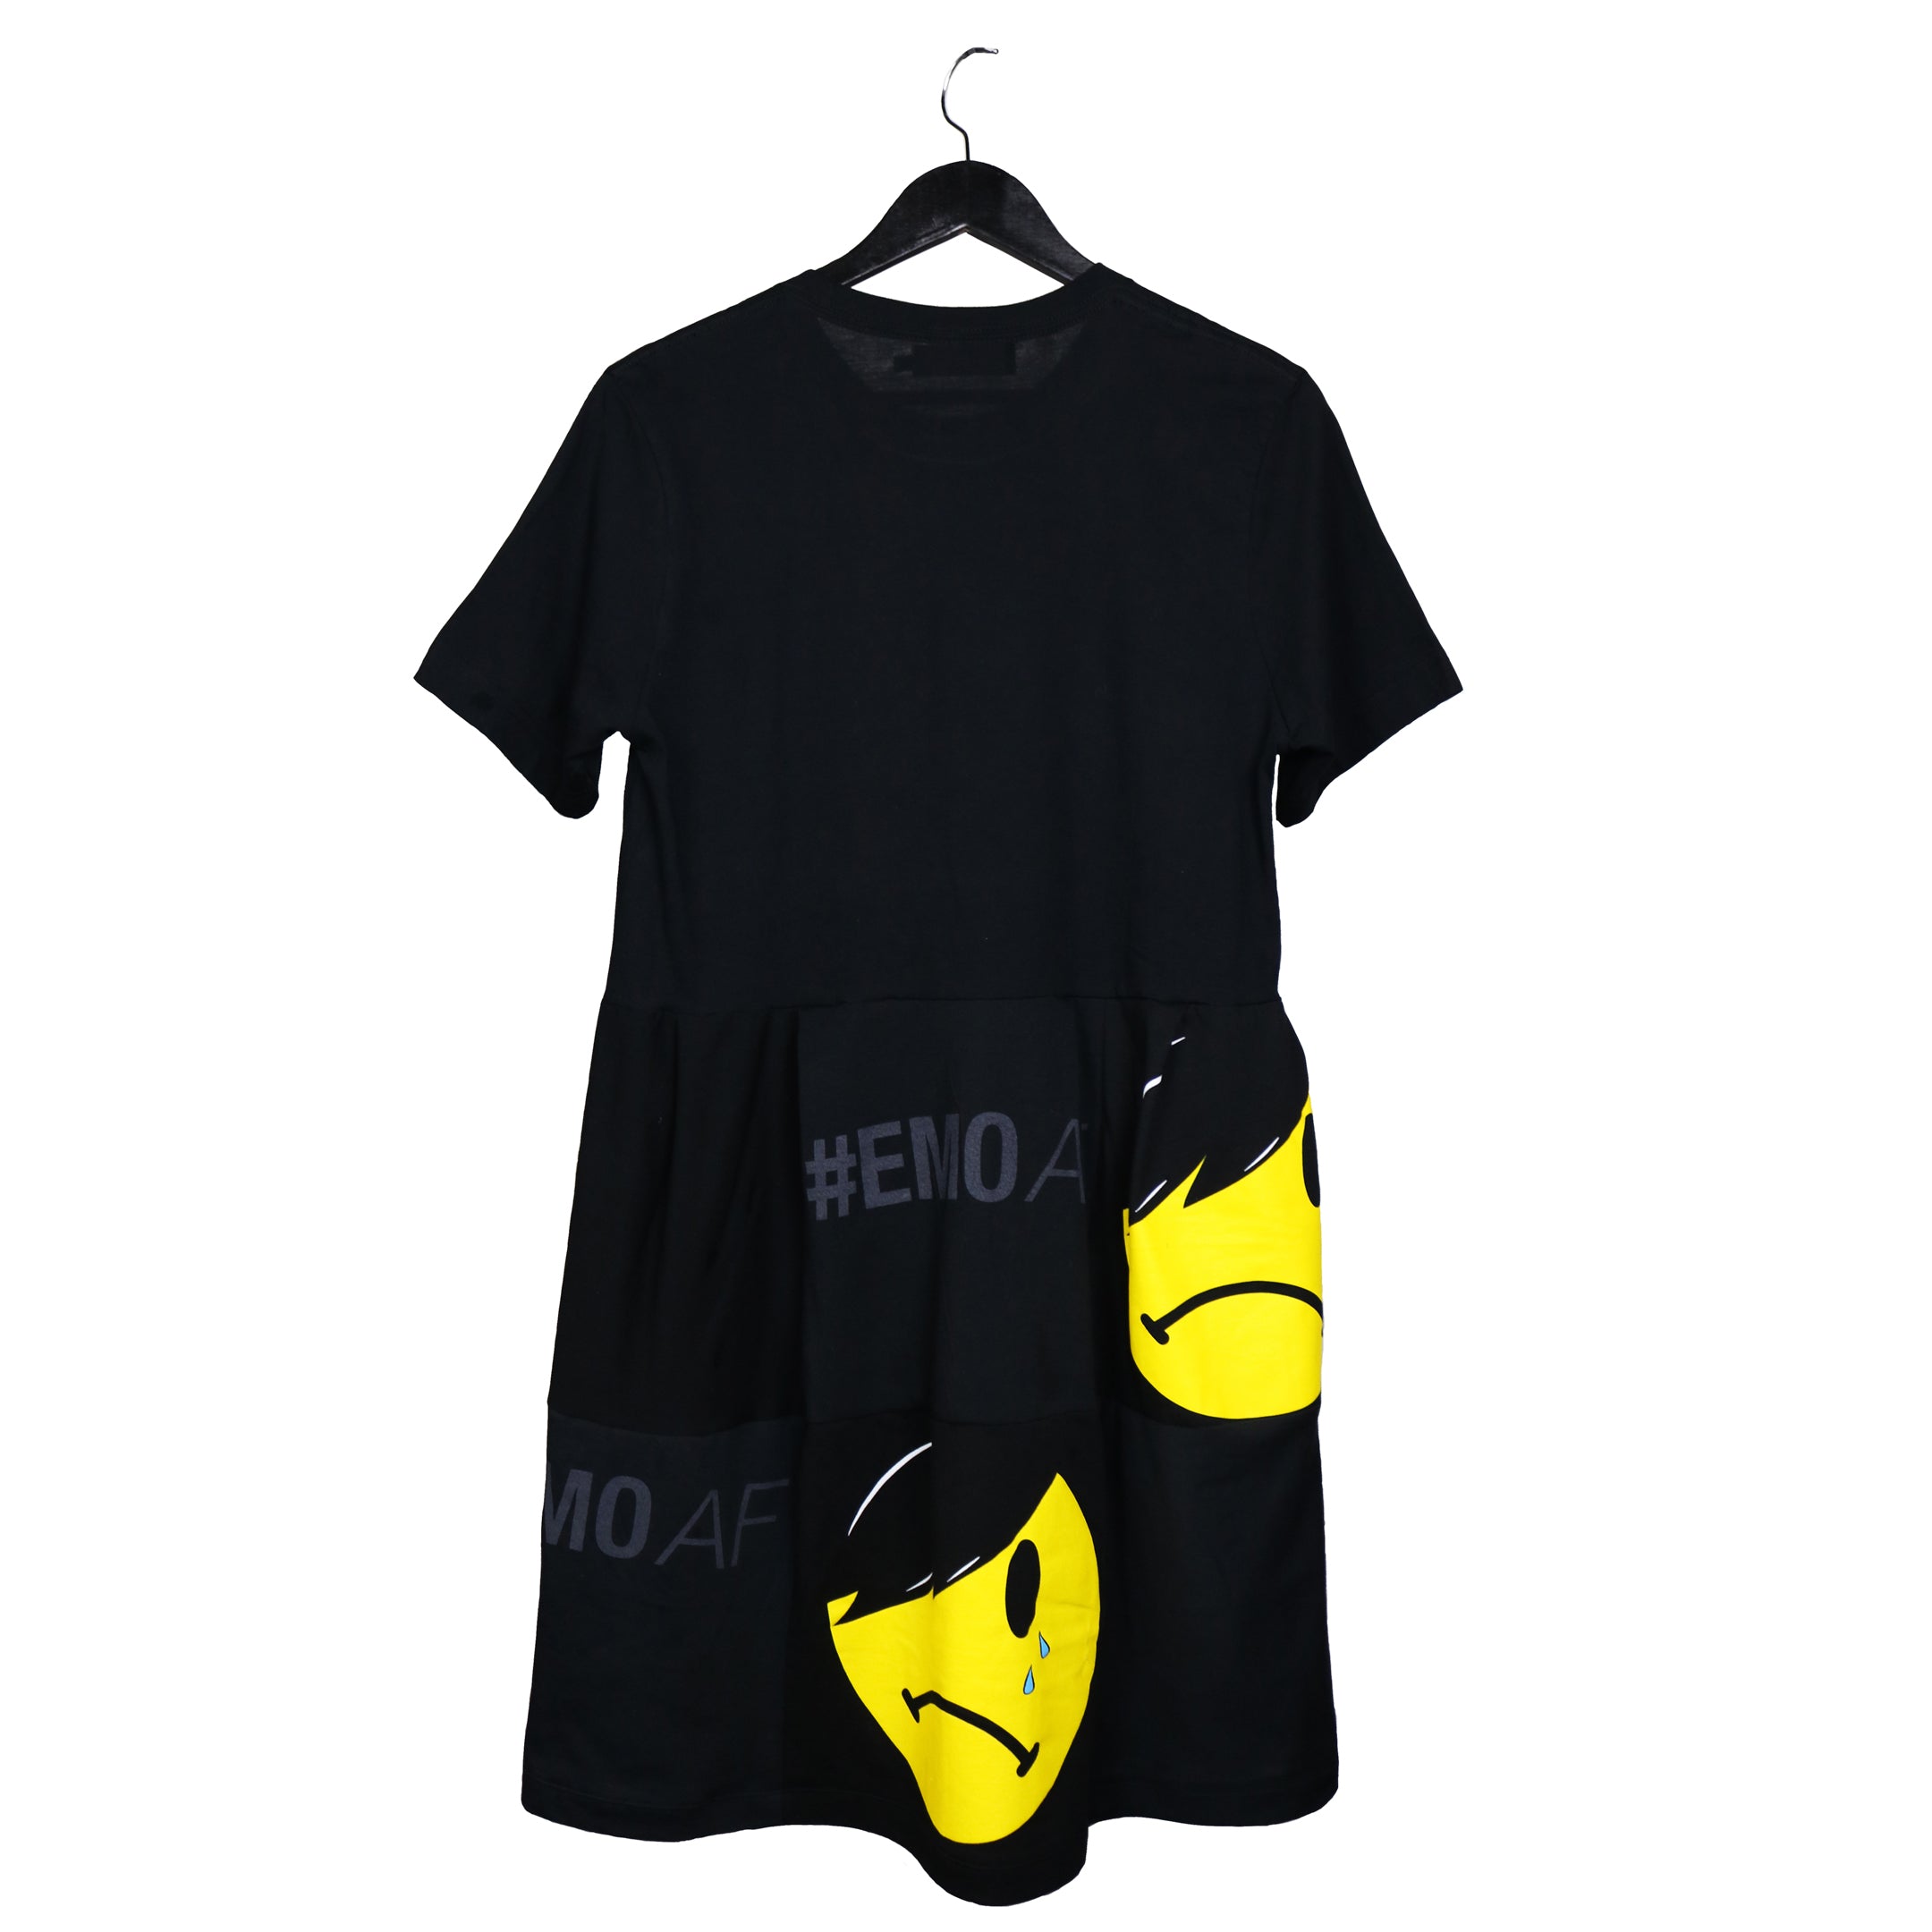 upcycled t-shirt tunic dress #emoAF emo emoji